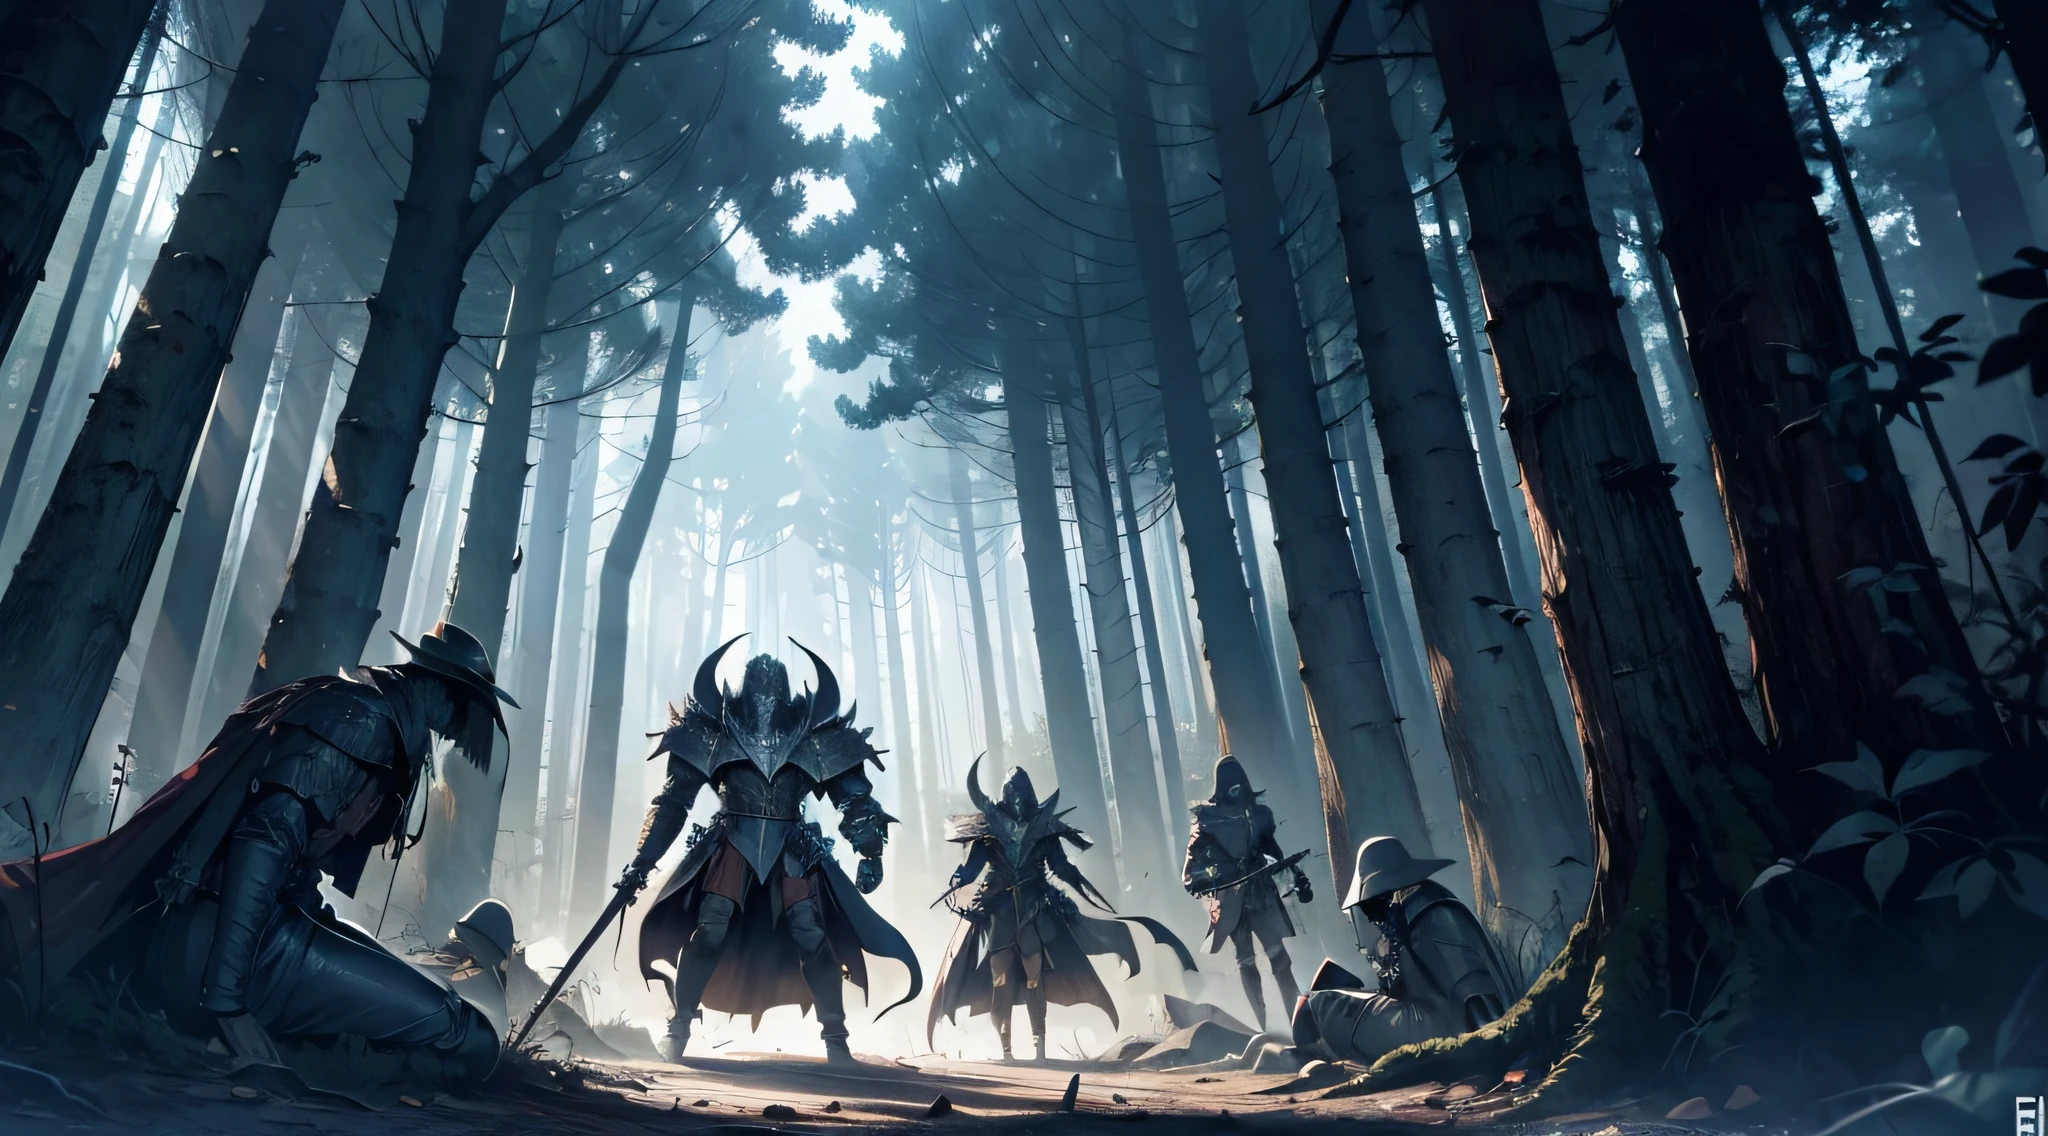 6 tote Ritter, alle auf dem Boden, fehlende Gliedmaßen, in einem dunklen Wald, mit einem eltrigen Wesen über ihnen, Manga-Zeichnung, Manga-Schattierung, 4k, berserk art